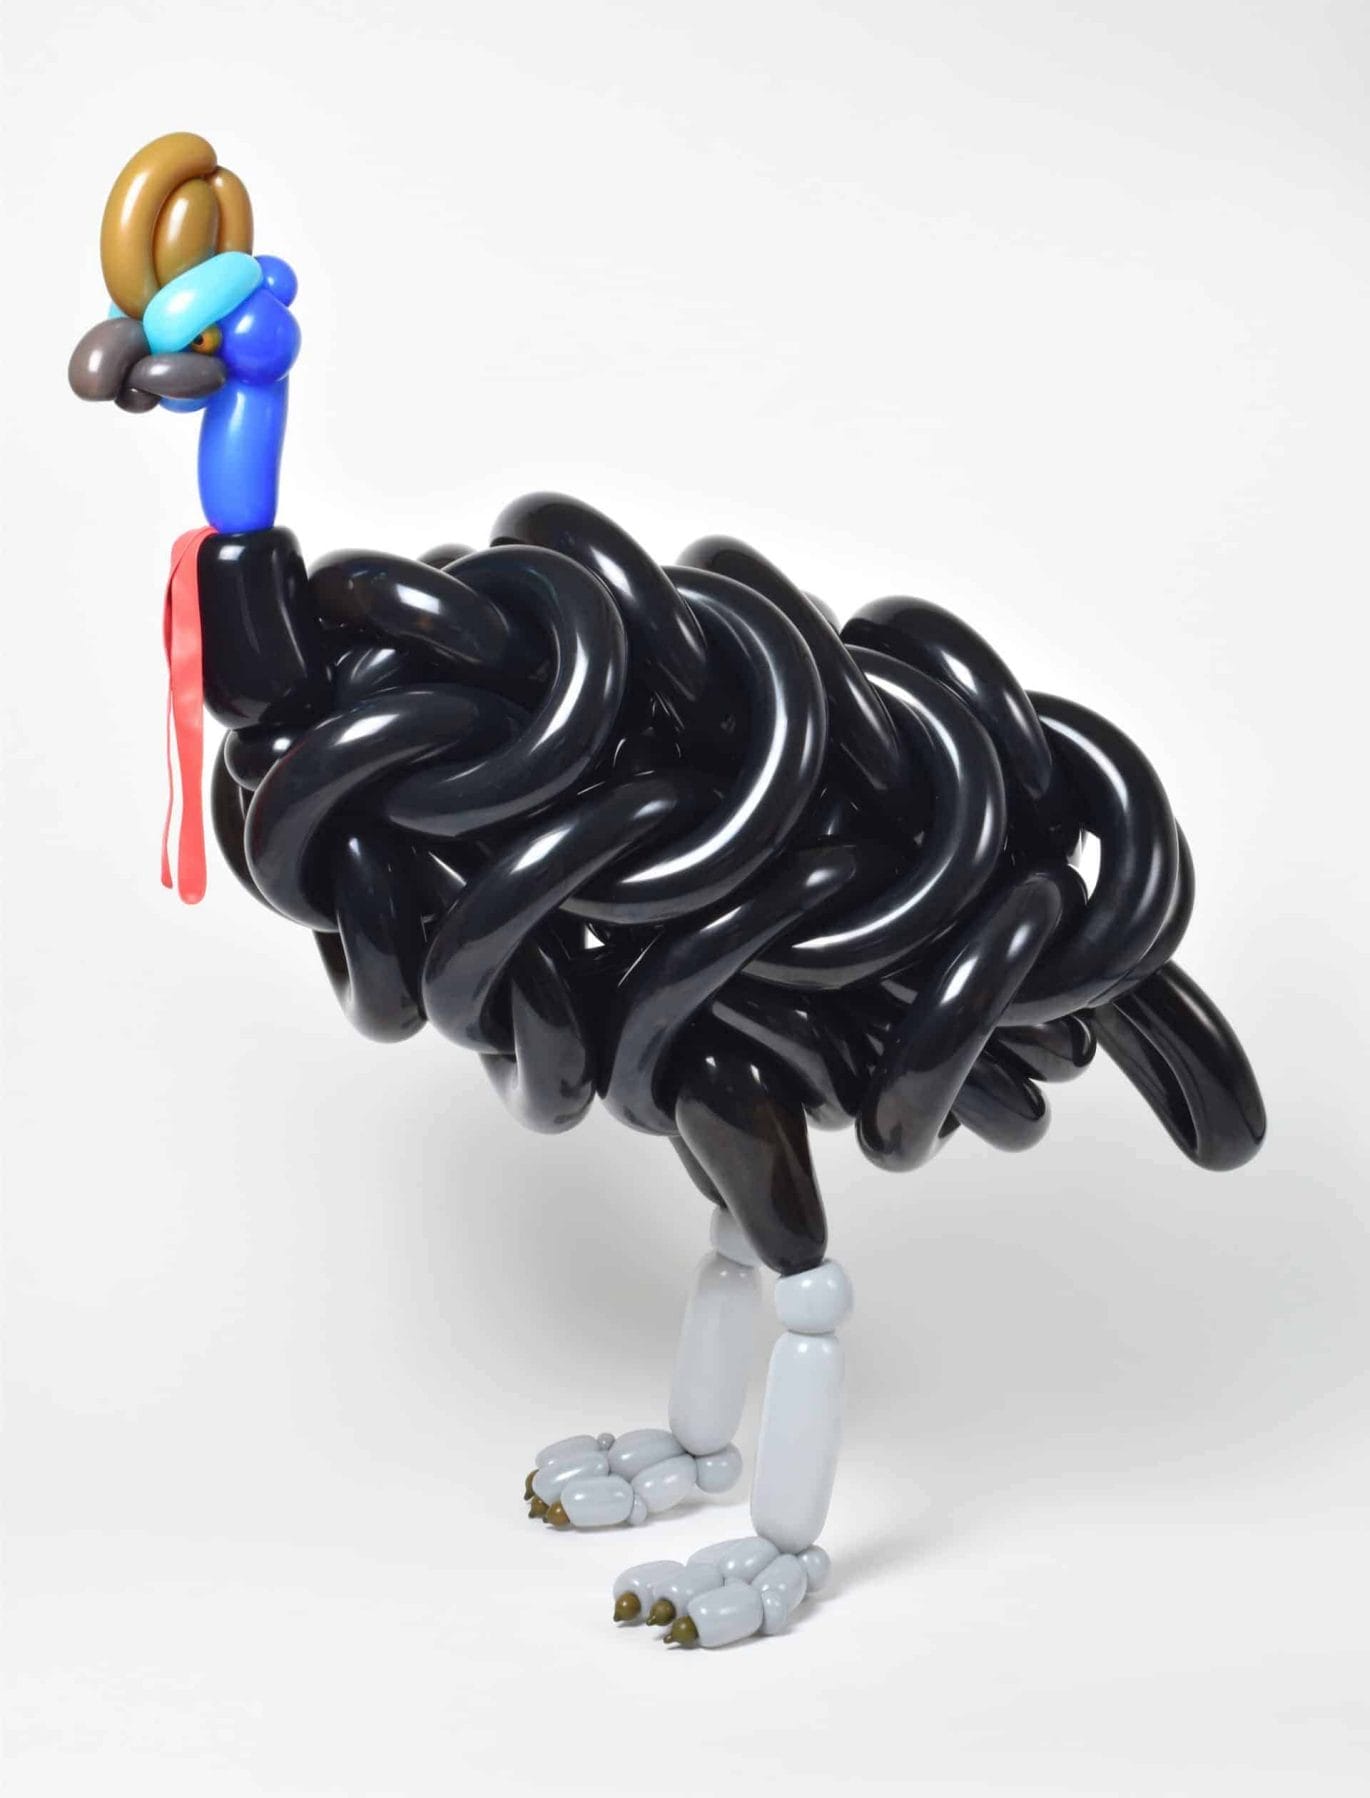 Indrukwekkende ballonkunst van Masayoshi Matsumoto